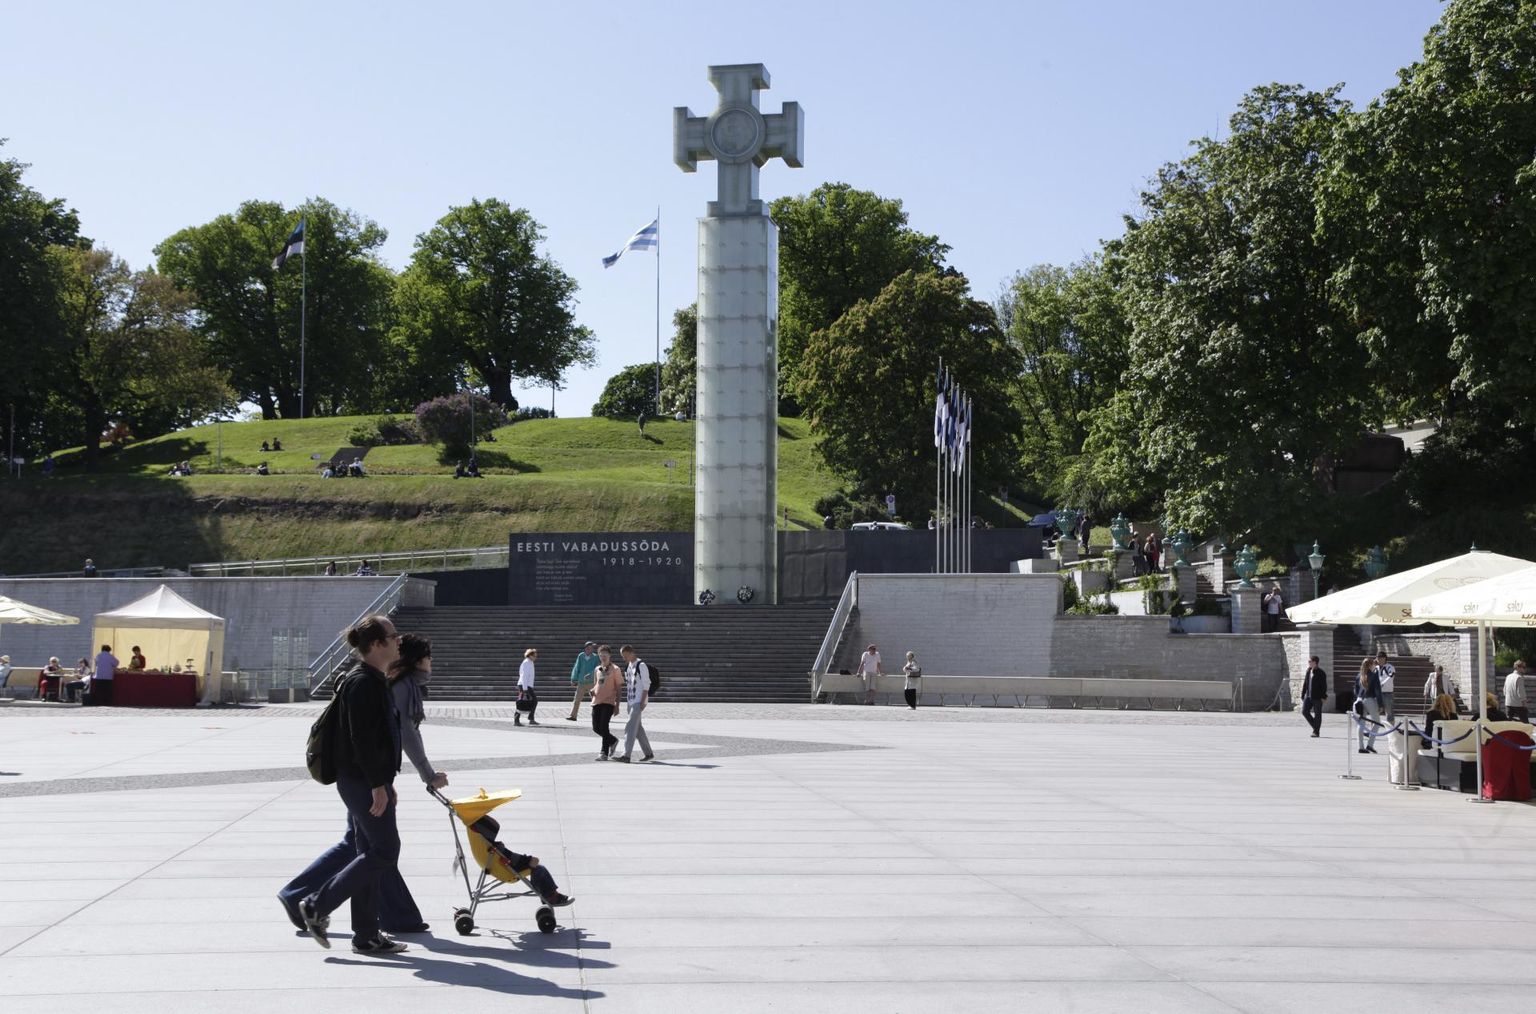 Памятник Освободительной войне, установленный на площади Вабадузе в Таллинне.